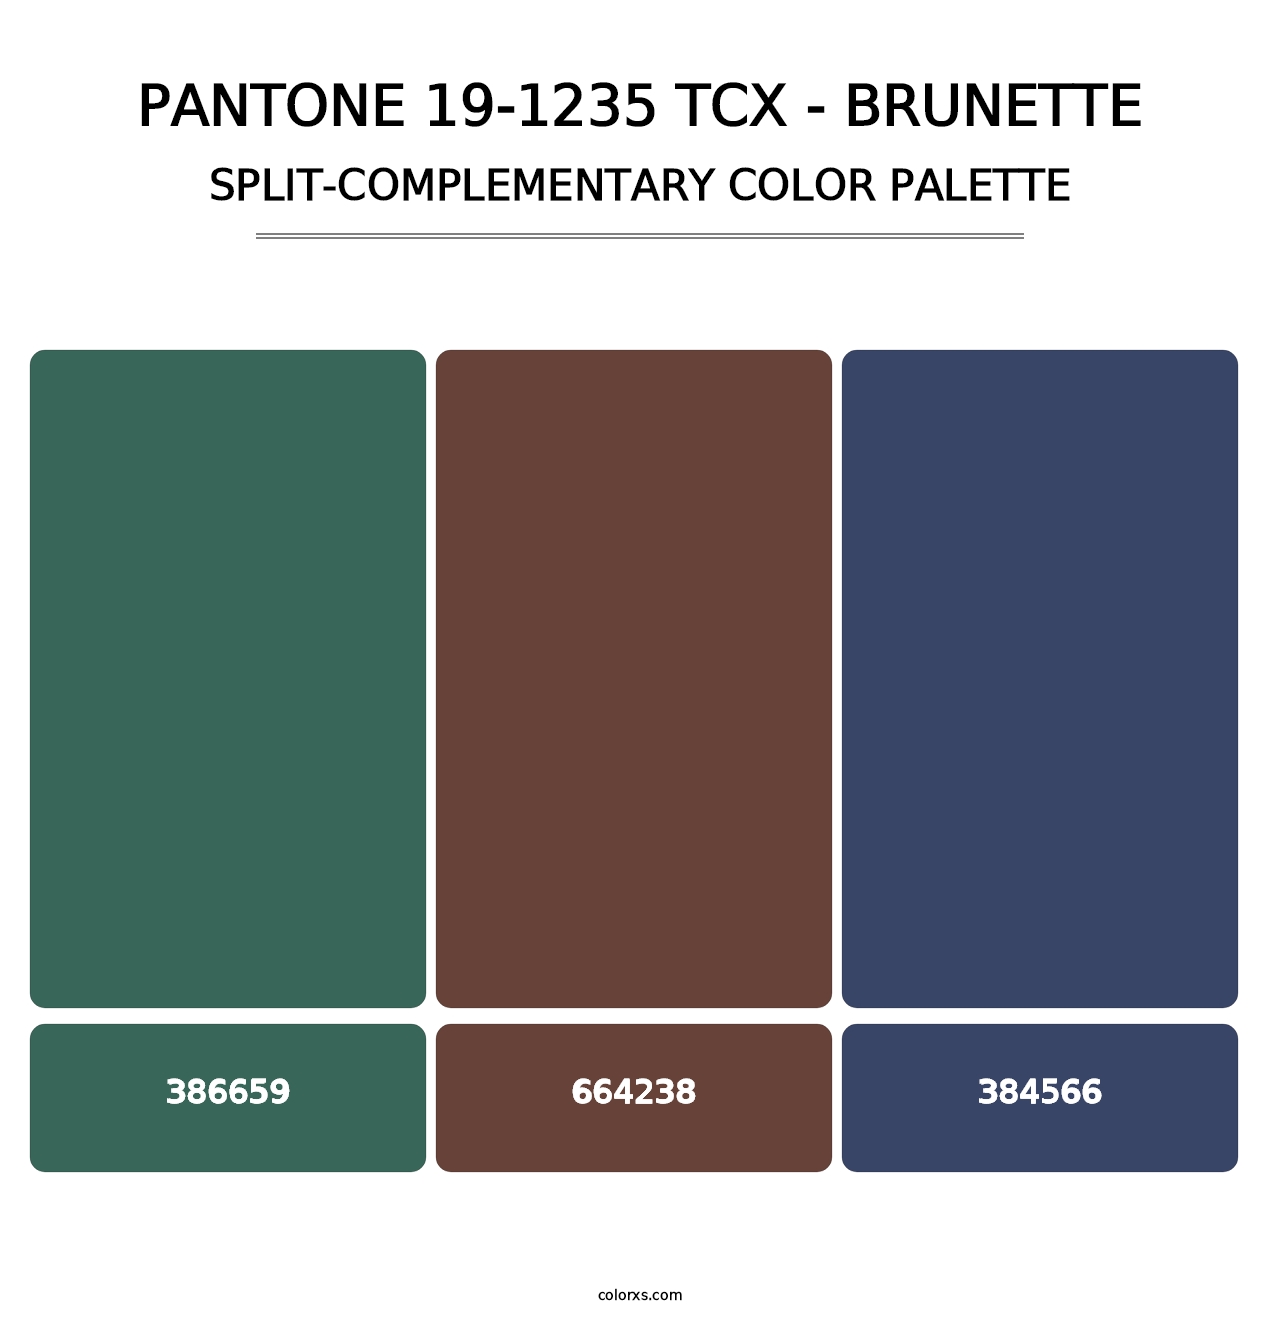 PANTONE 19-1235 TCX - Brunette - Split-Complementary Color Palette